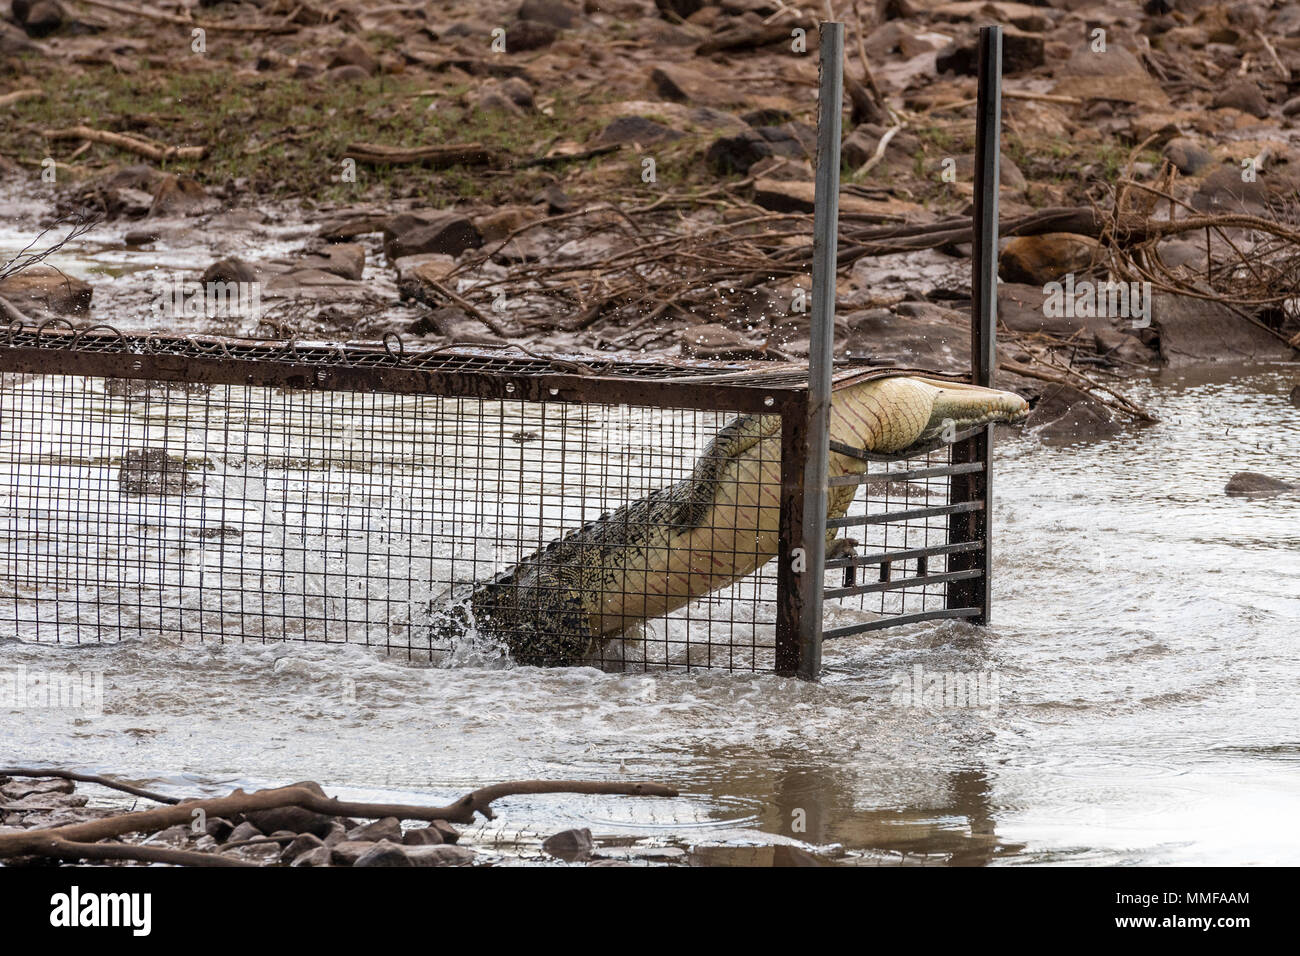 Ein Salzwasser Krokodil versucht, aus einem Käfig zu entkommen. Stockfoto